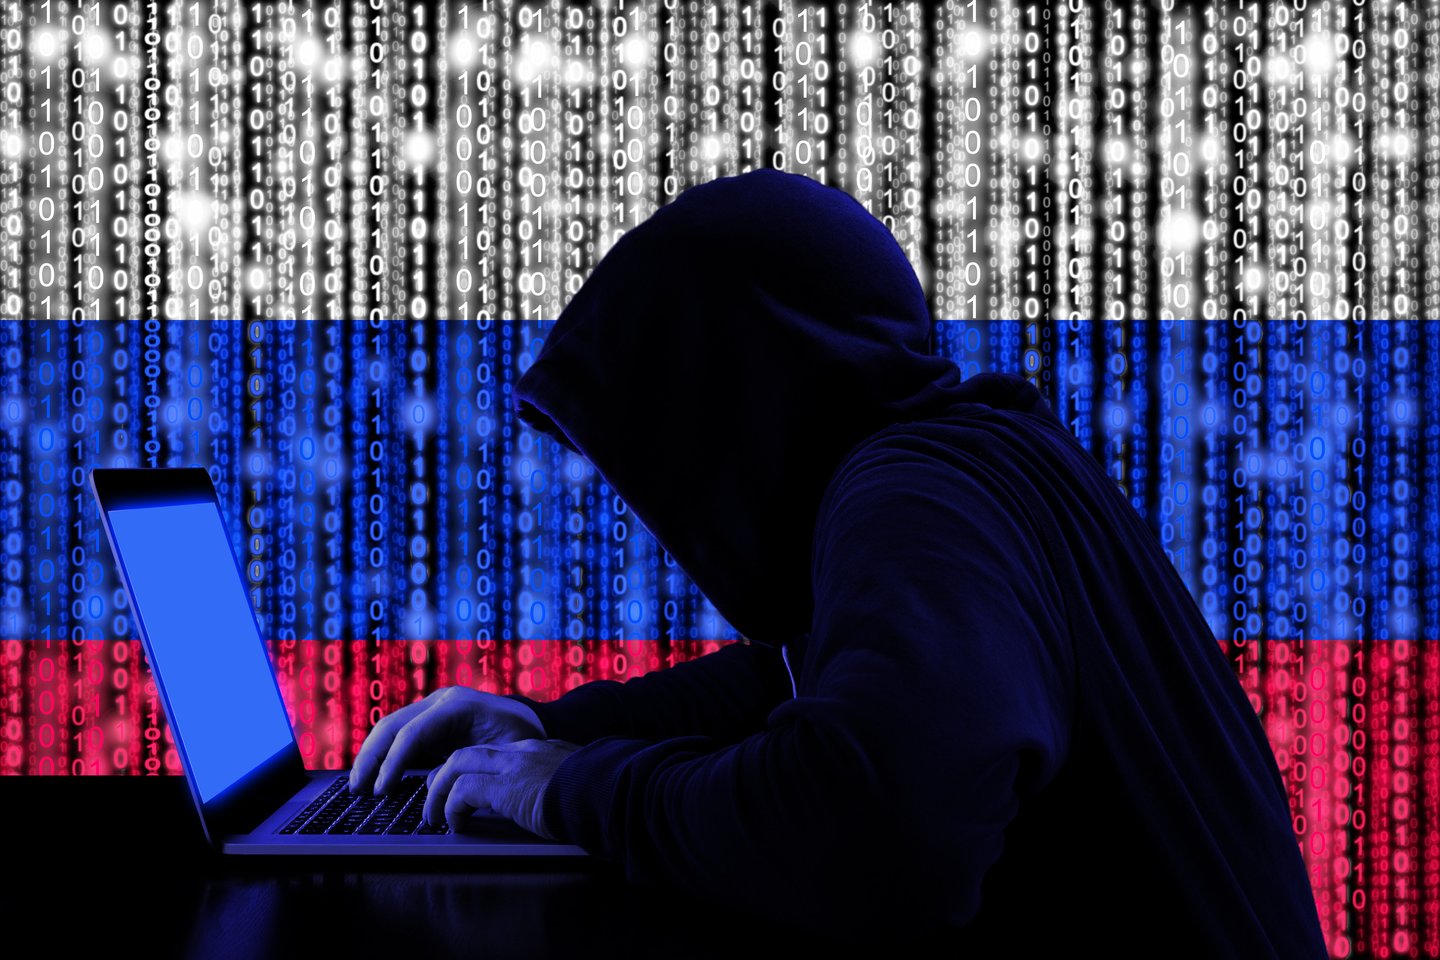  Didieji bankai baiminasi, kad po to, kai savaitgalį septyni Rusijos bankai buvo pašalinti iš pasaulinės mokėjimų pranešimų sistemos SWIFT, ši sistema gali susidurti su didėjančia Rusijos kibernetinių atakų grėsme.<br> 123rf iliustr.